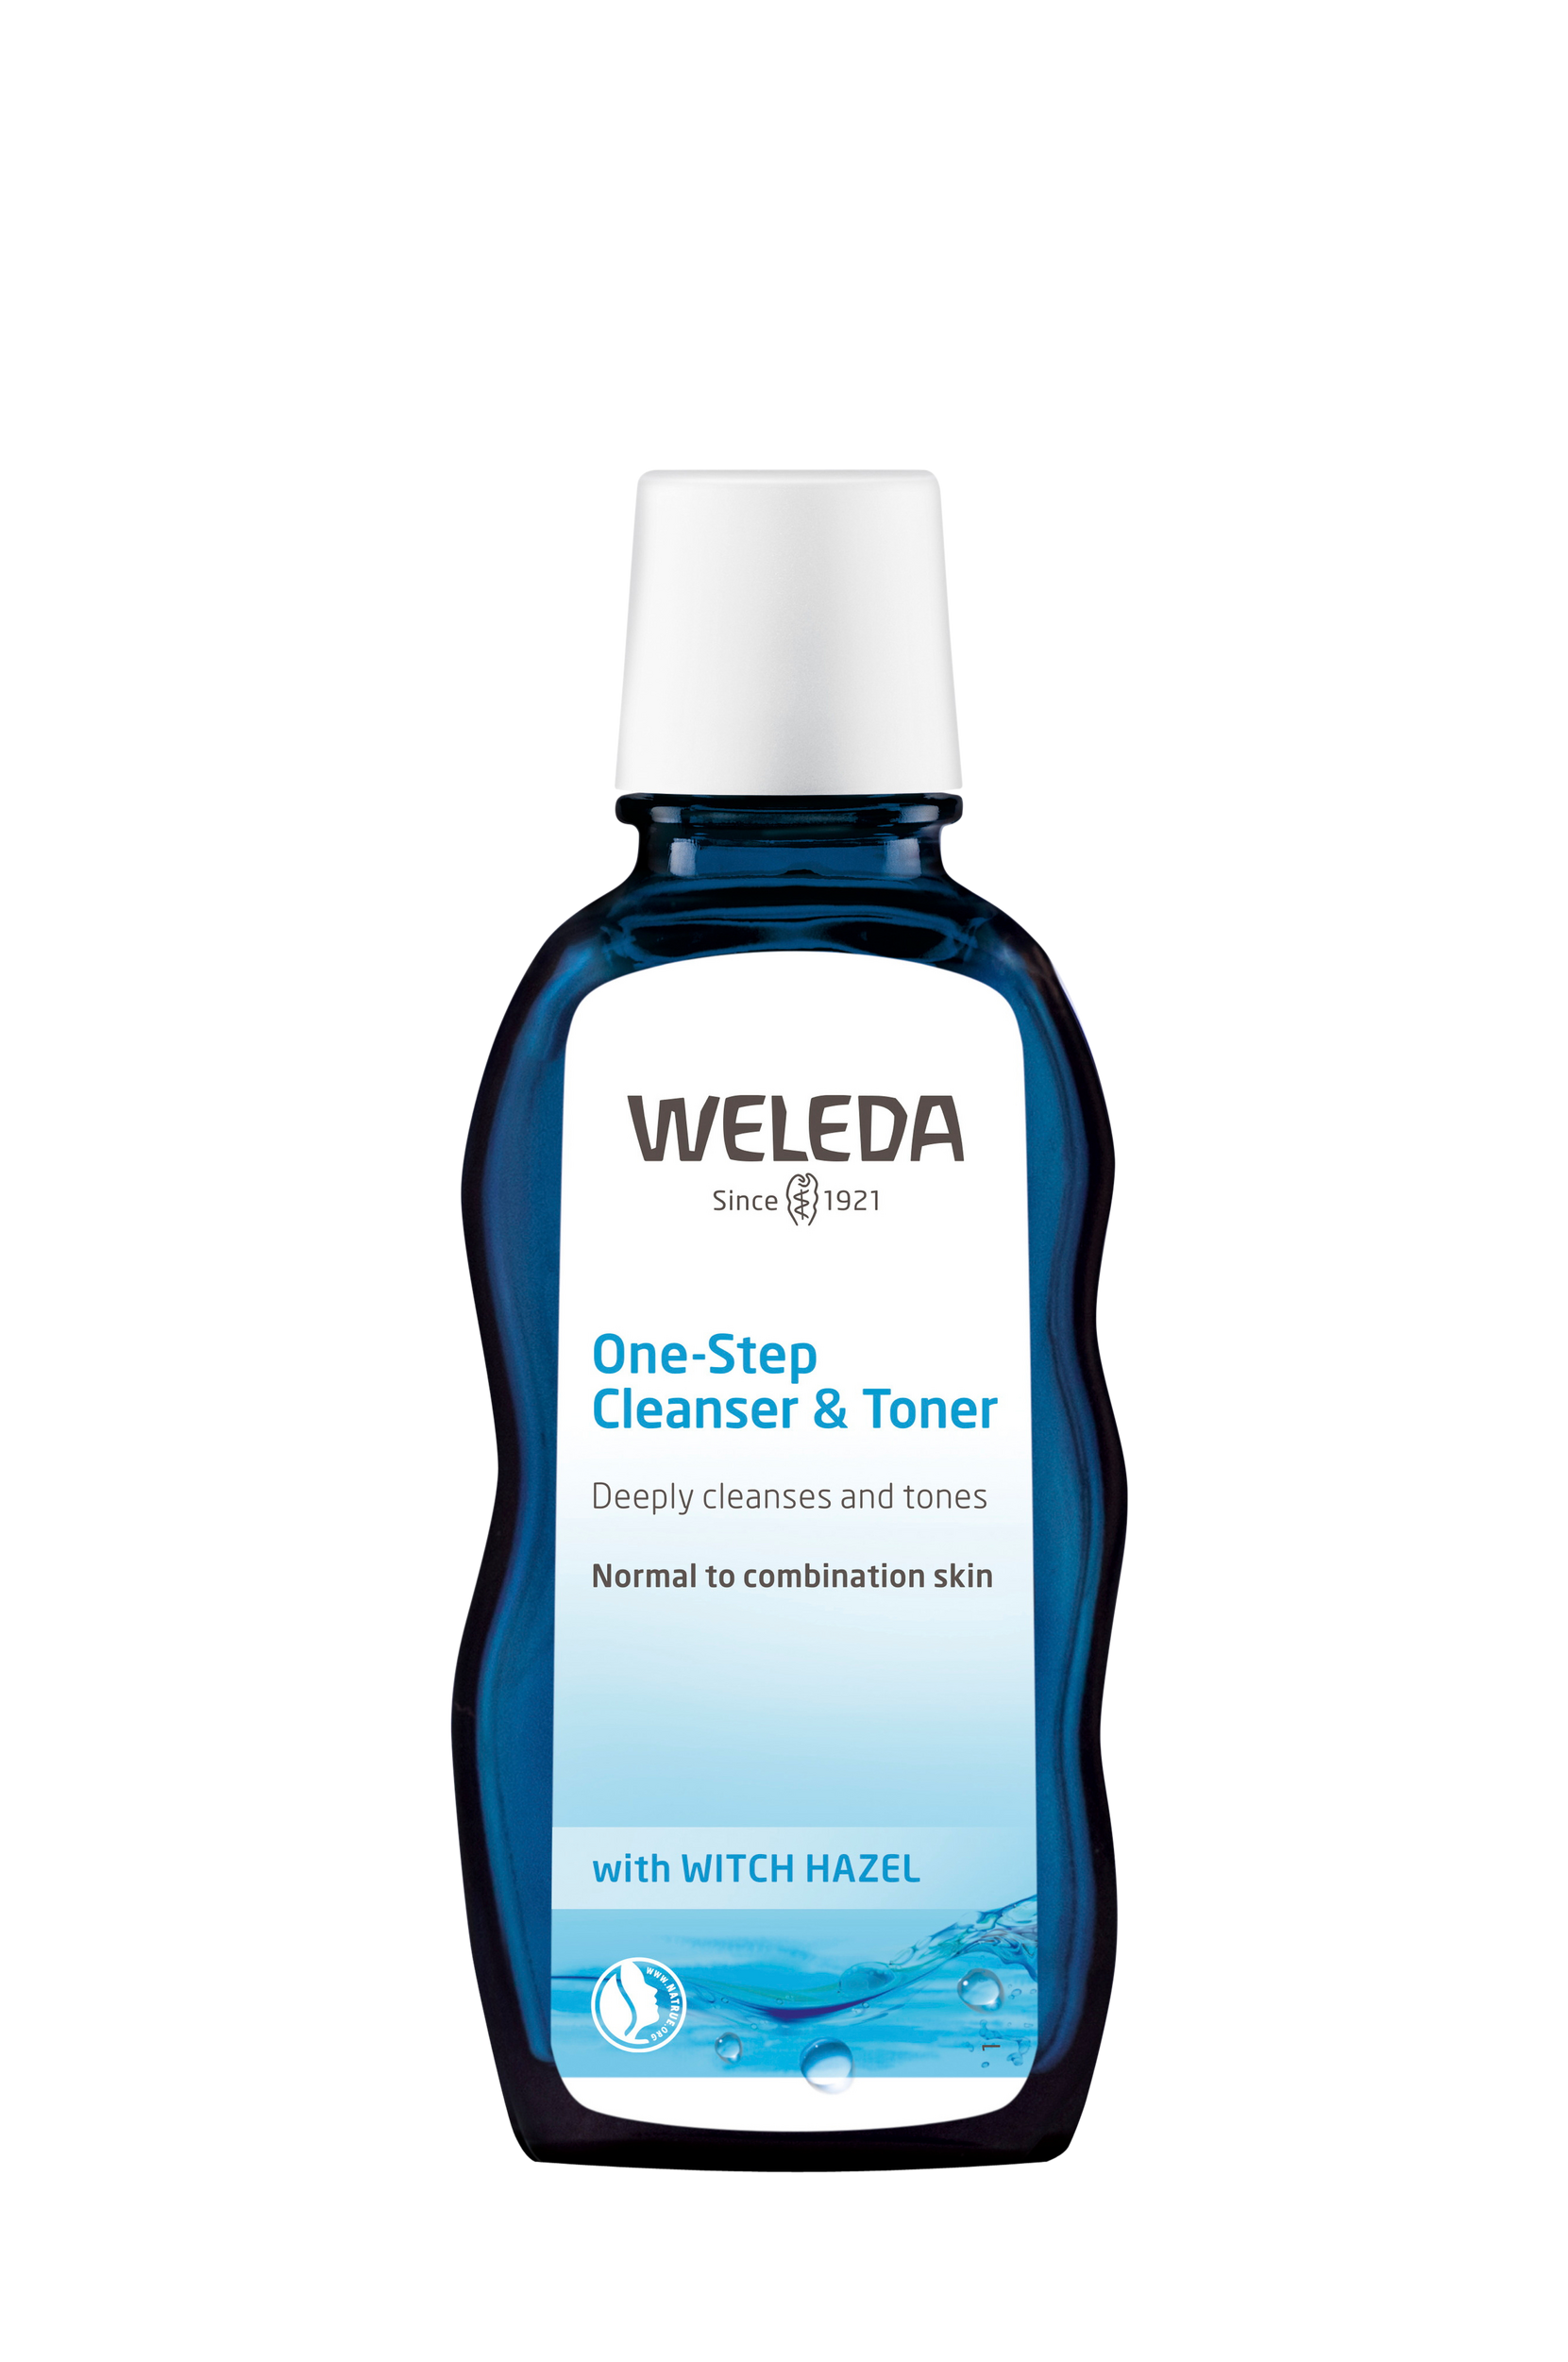 One-Step Cleanser & Toner 100 ml, Weleda